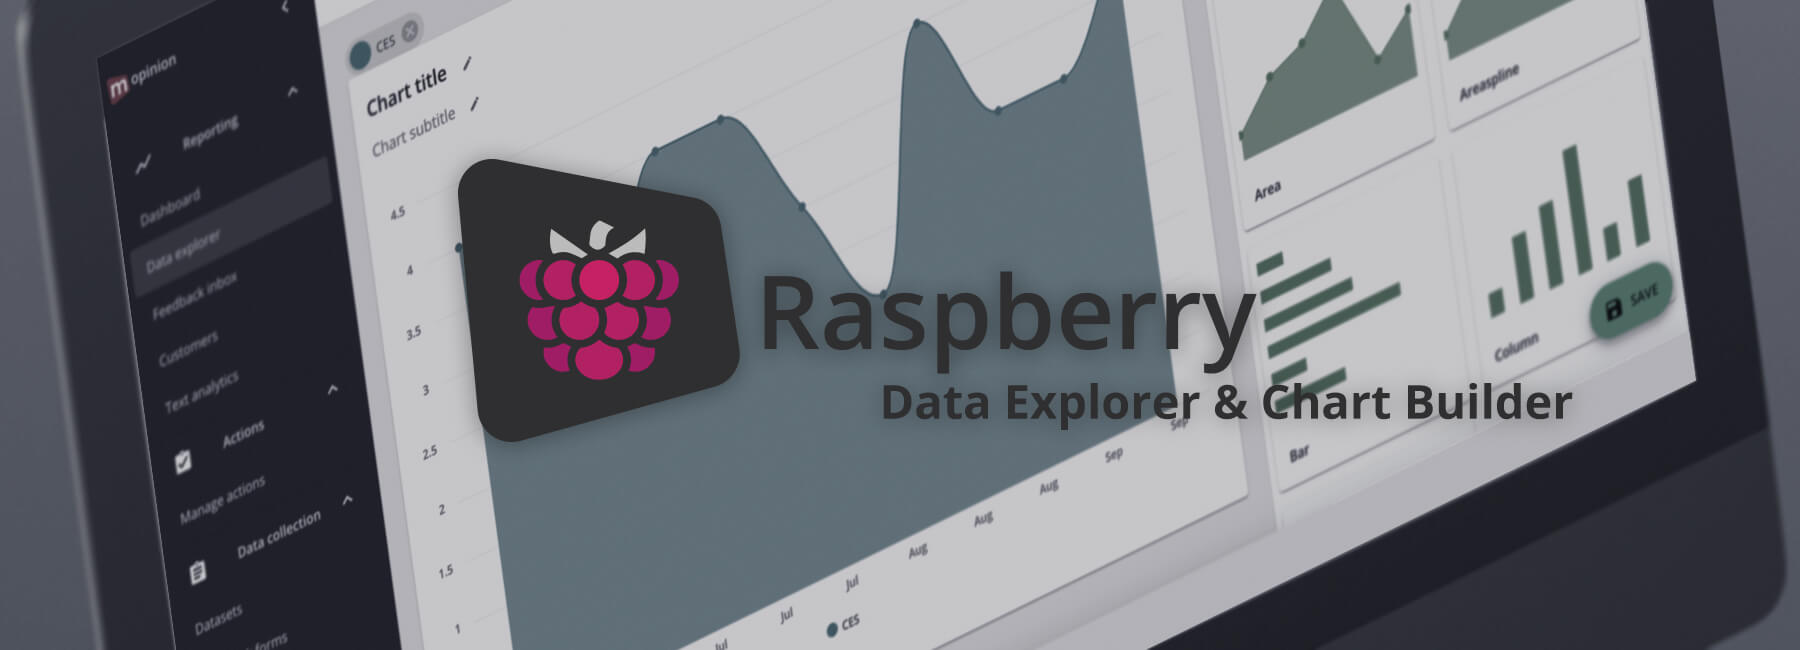 Mopinion Raspberry (Deel 5): Data Explorer & Chart Builder